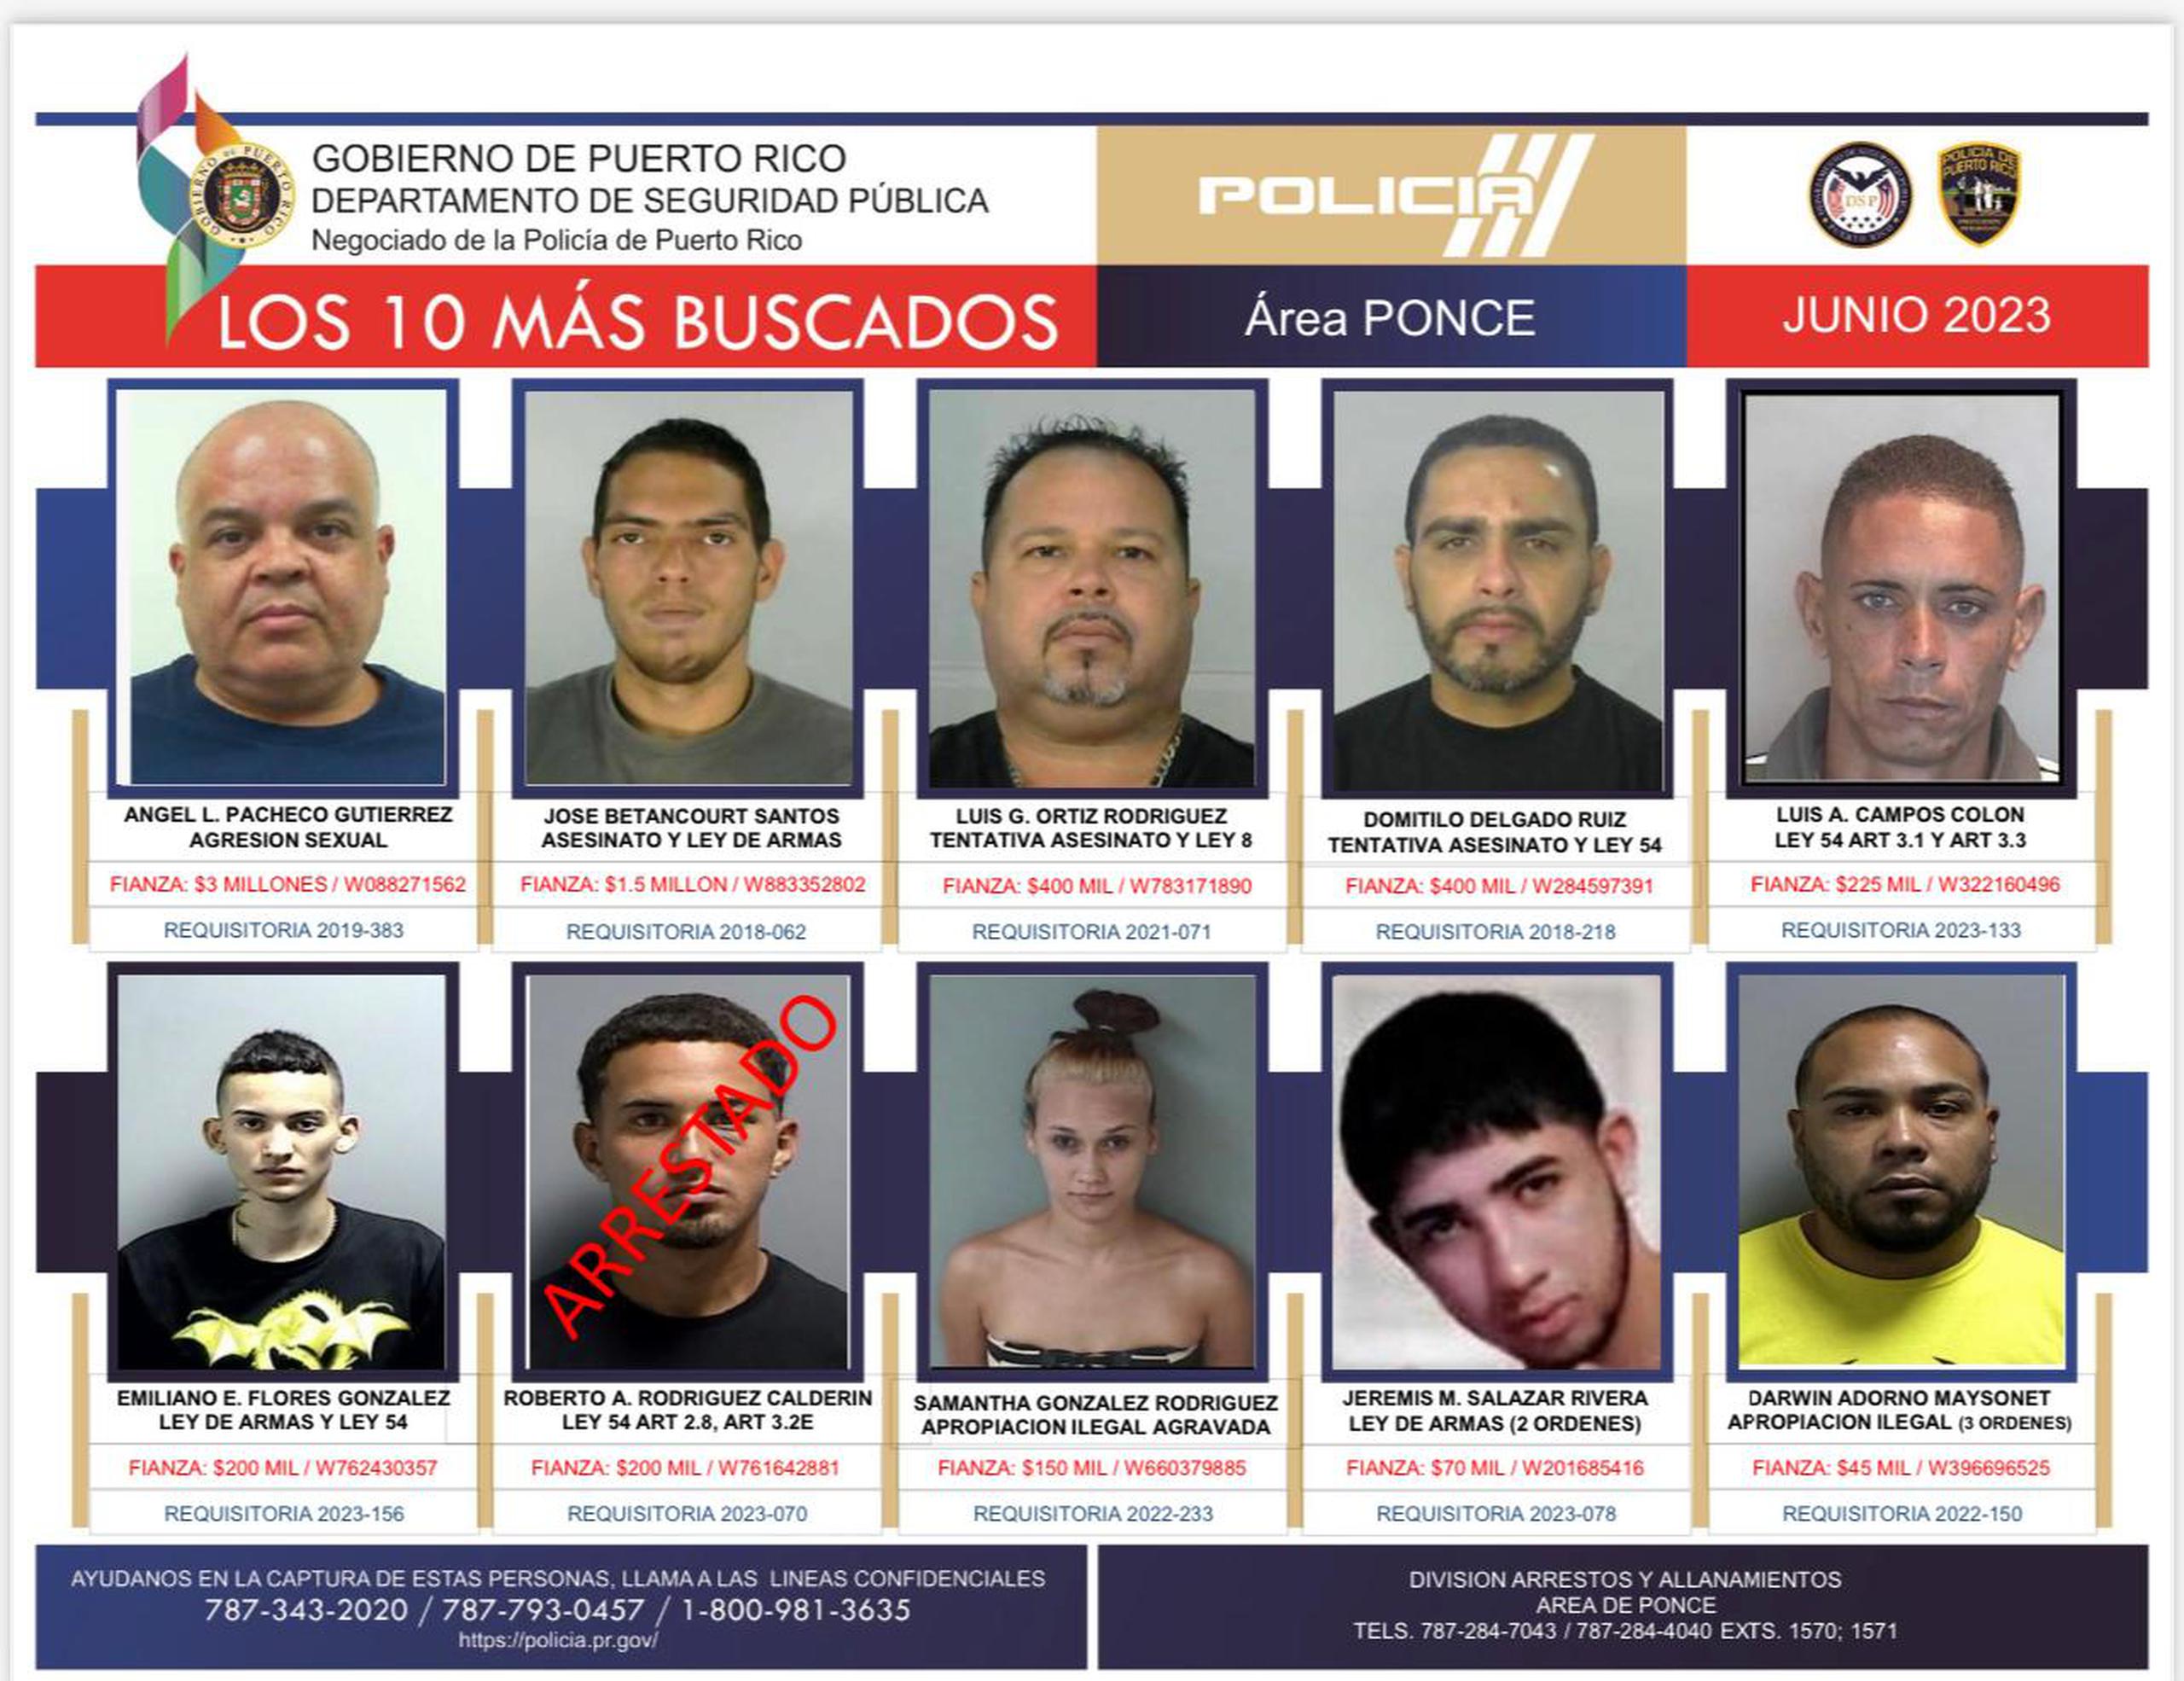 Los 10 más buscados por la Policía del área de Ponce.